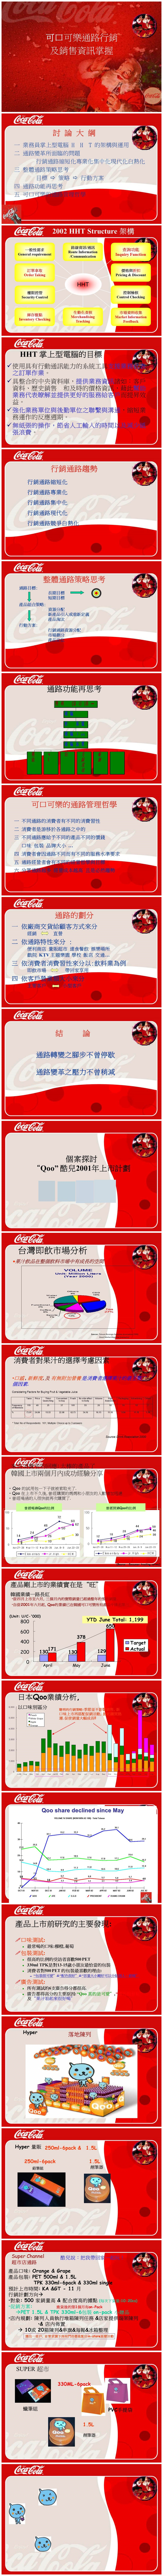 可口可乐销售咨询掌握分析类PPT模板-聚给网